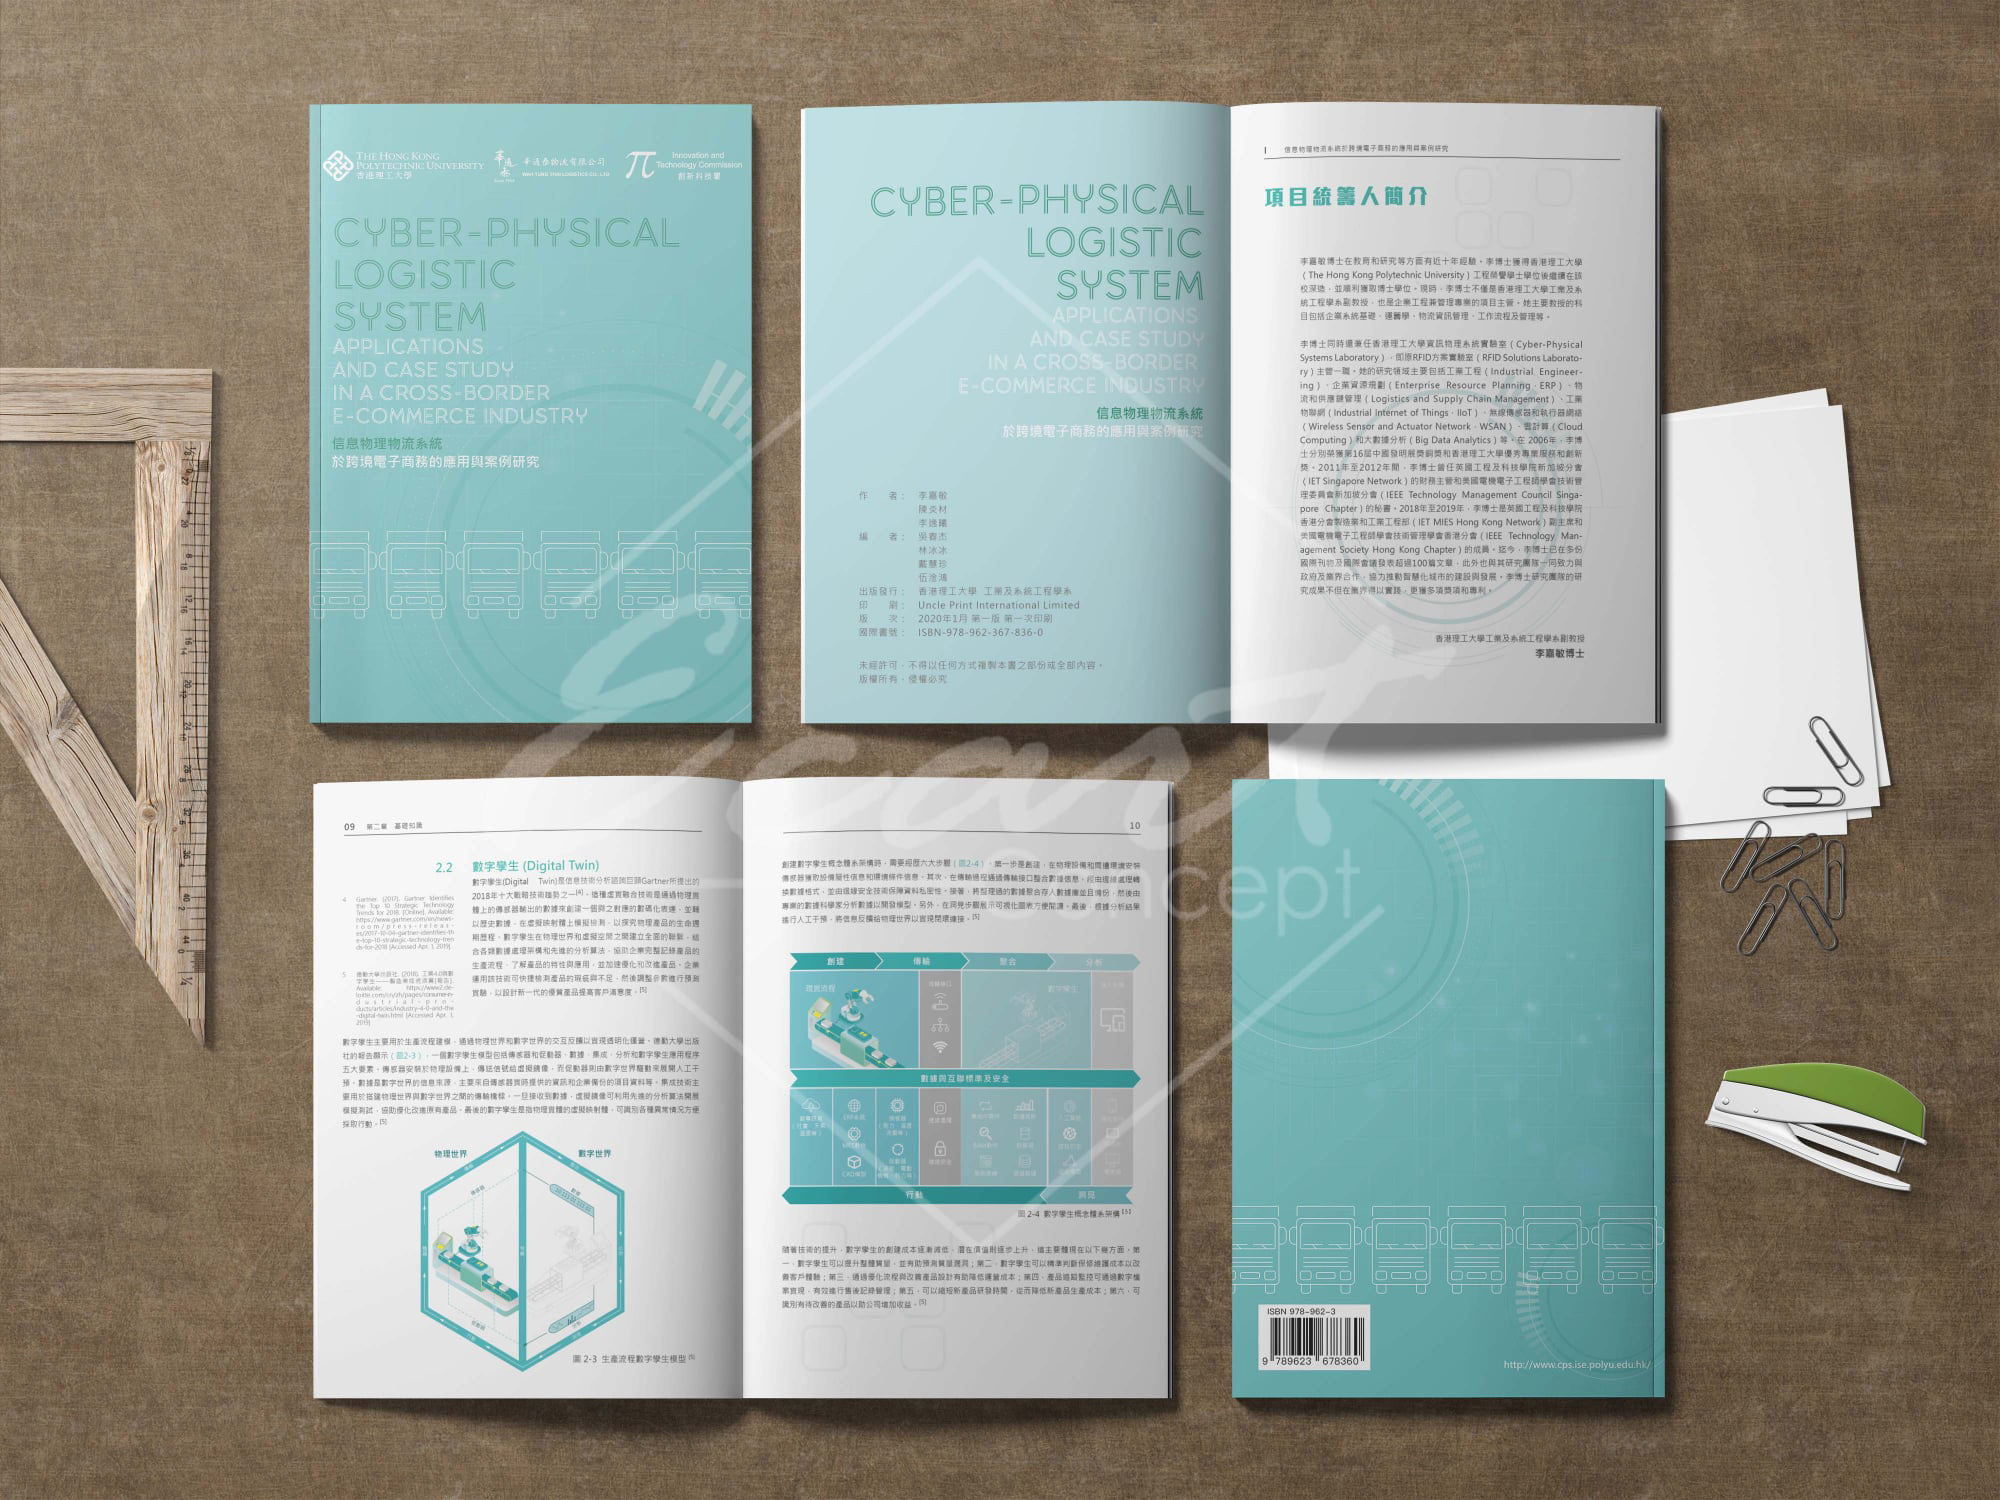 書刊設計 小冊子設計 Booklet Design Brochure Design 平面設計 Graphic Design 書籍出版 Book Publishing